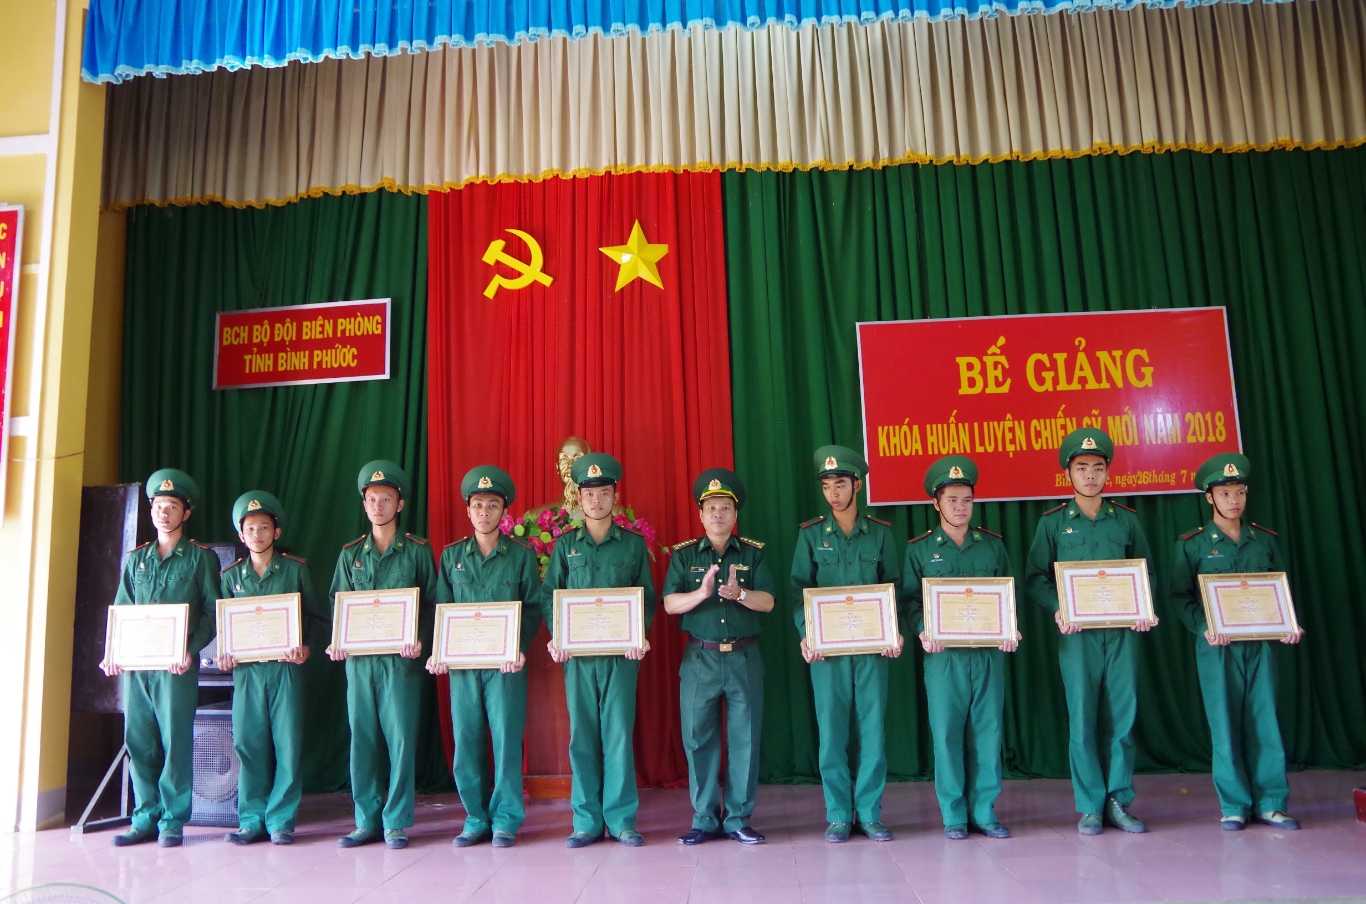 Đại tá Lê Đa Tịnh trao giấy khen của bộ chỉ huy cho các chiến sĩ hoàn thành xuất sắc nhiệm vụ huấn luyện